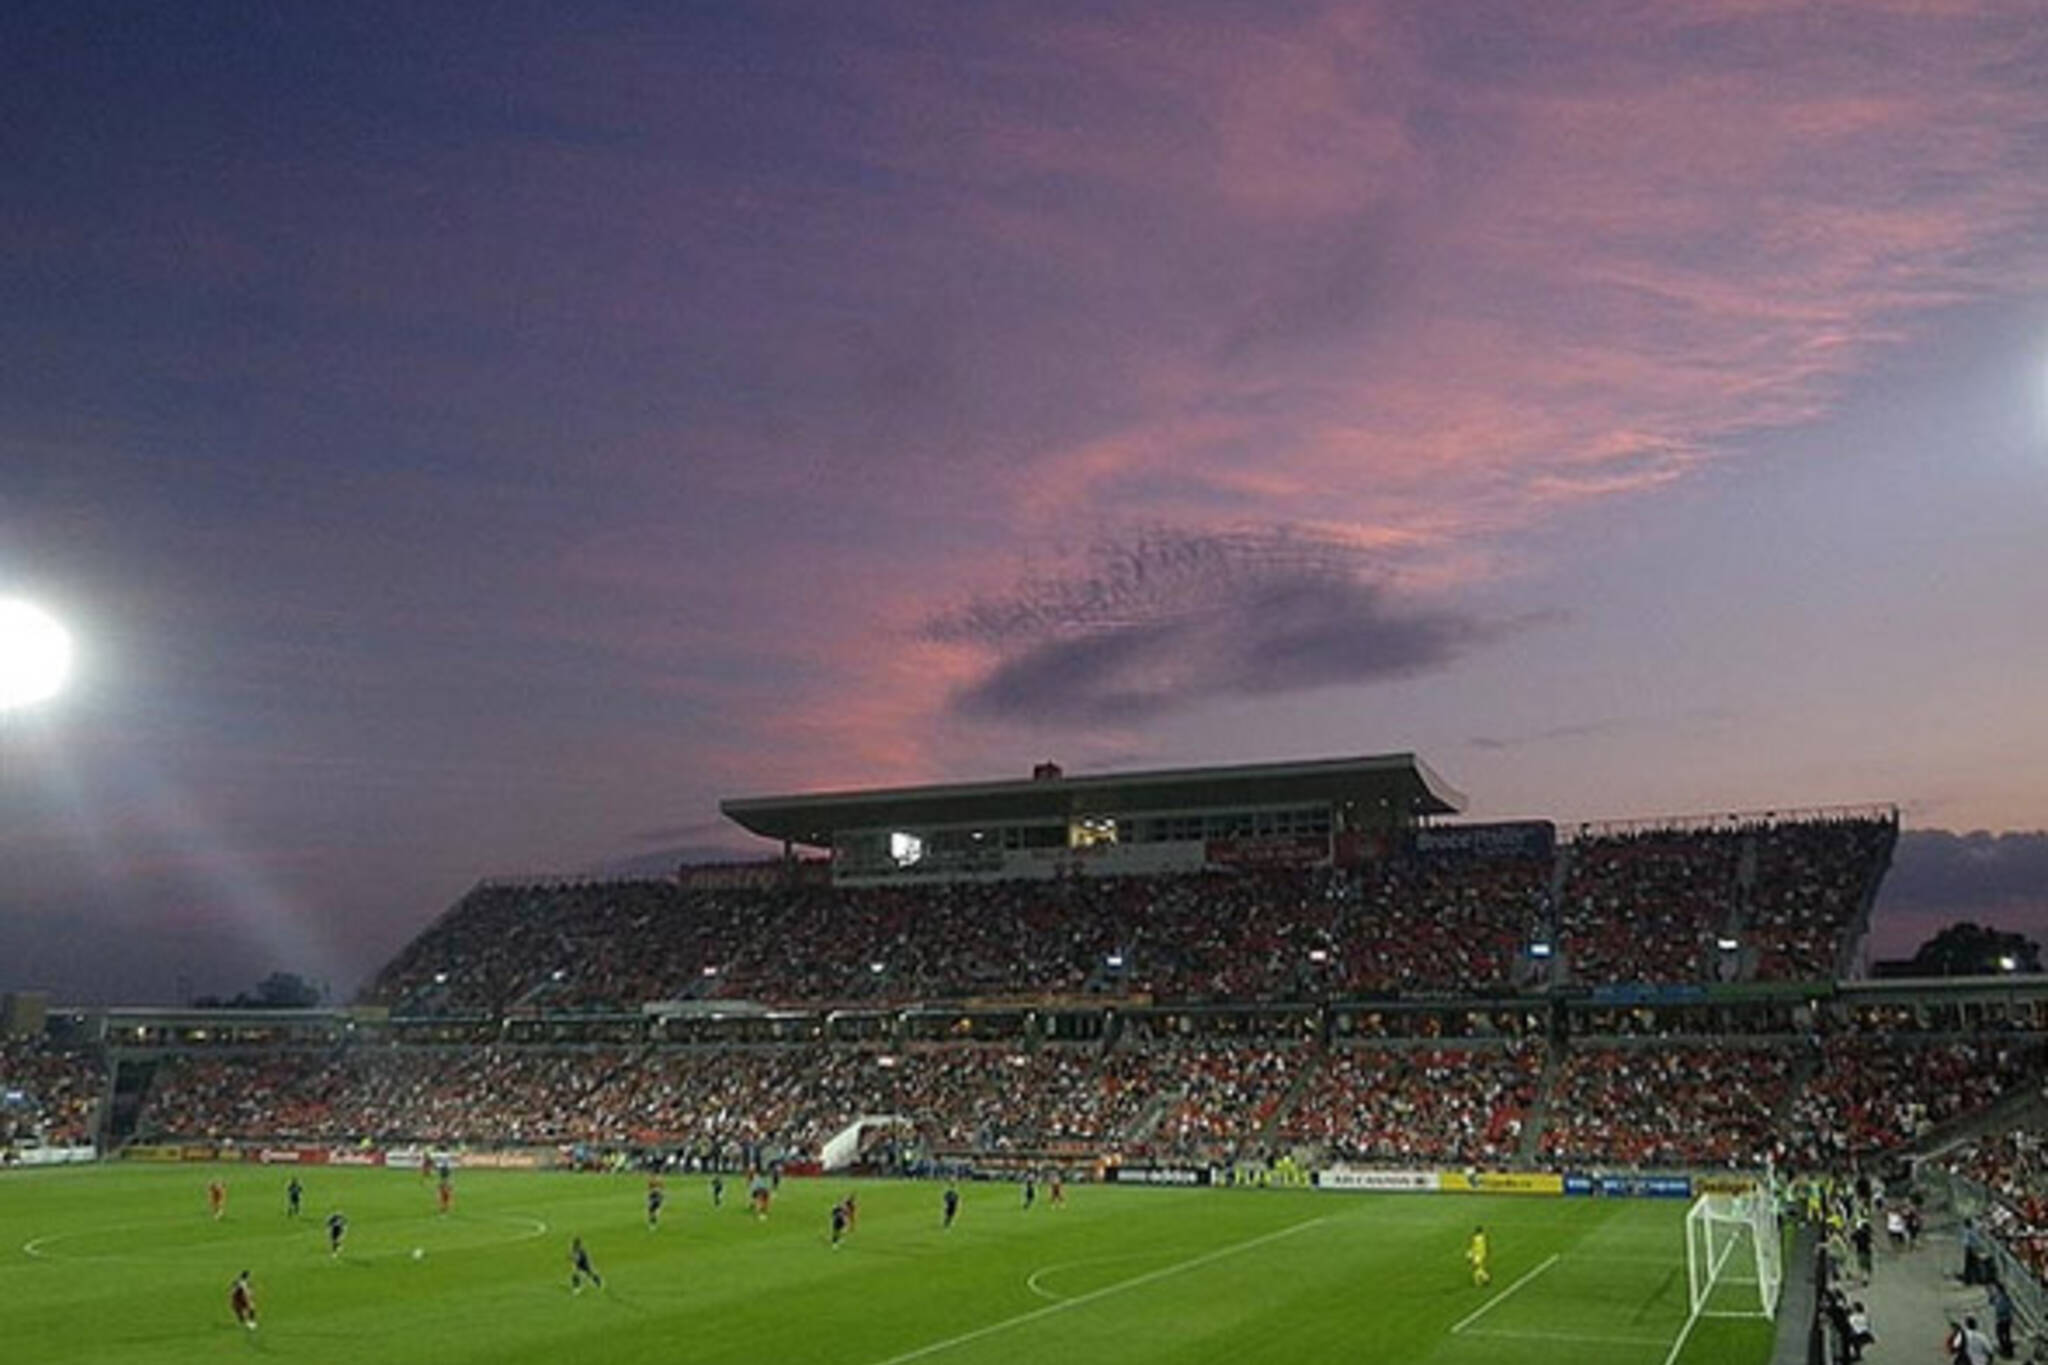 sky, sunset, soccer